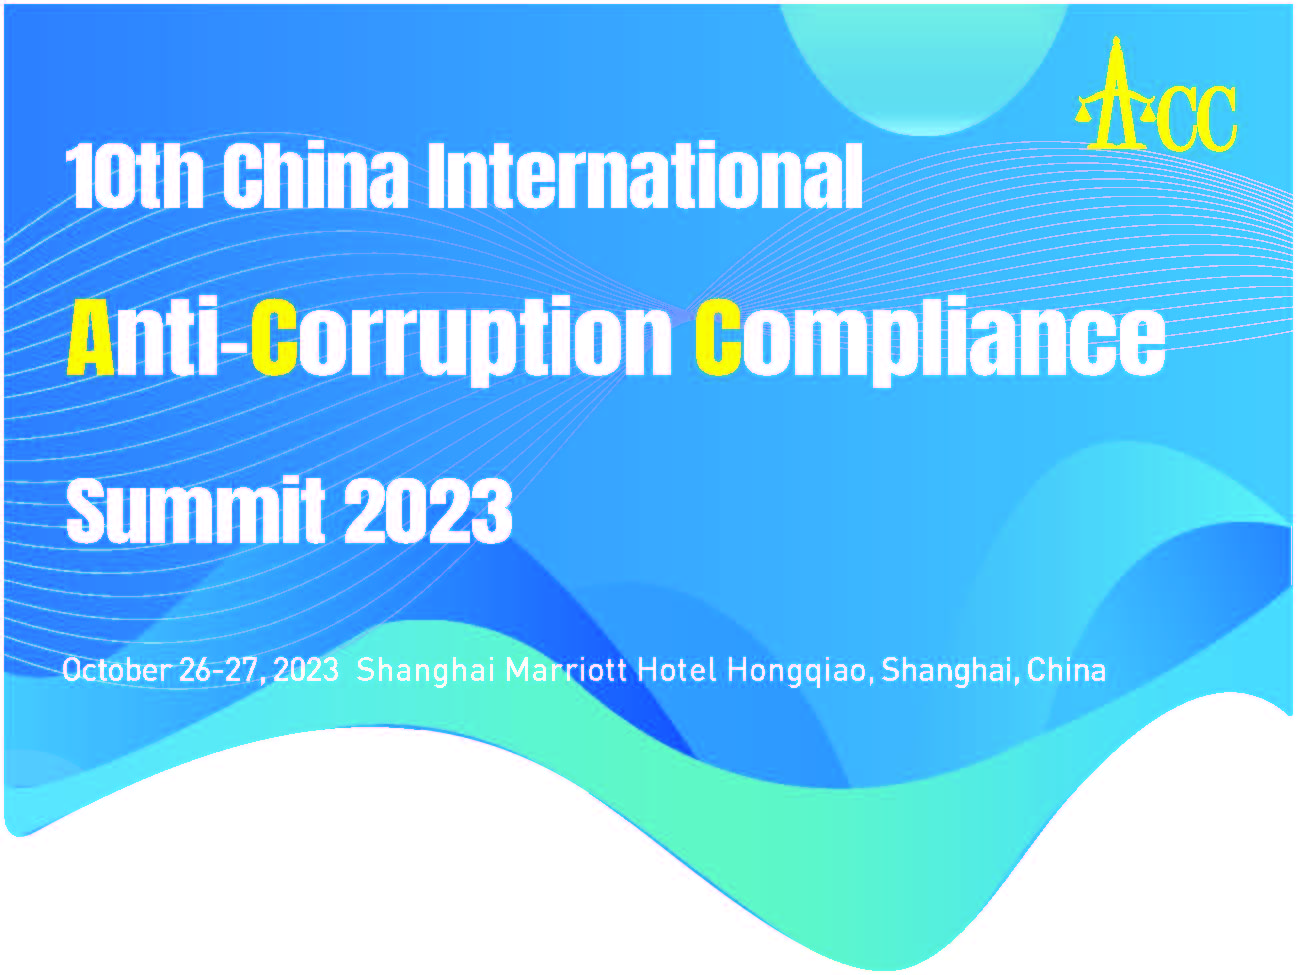 10th China International Anti-Corruption Compliance Summit 2023